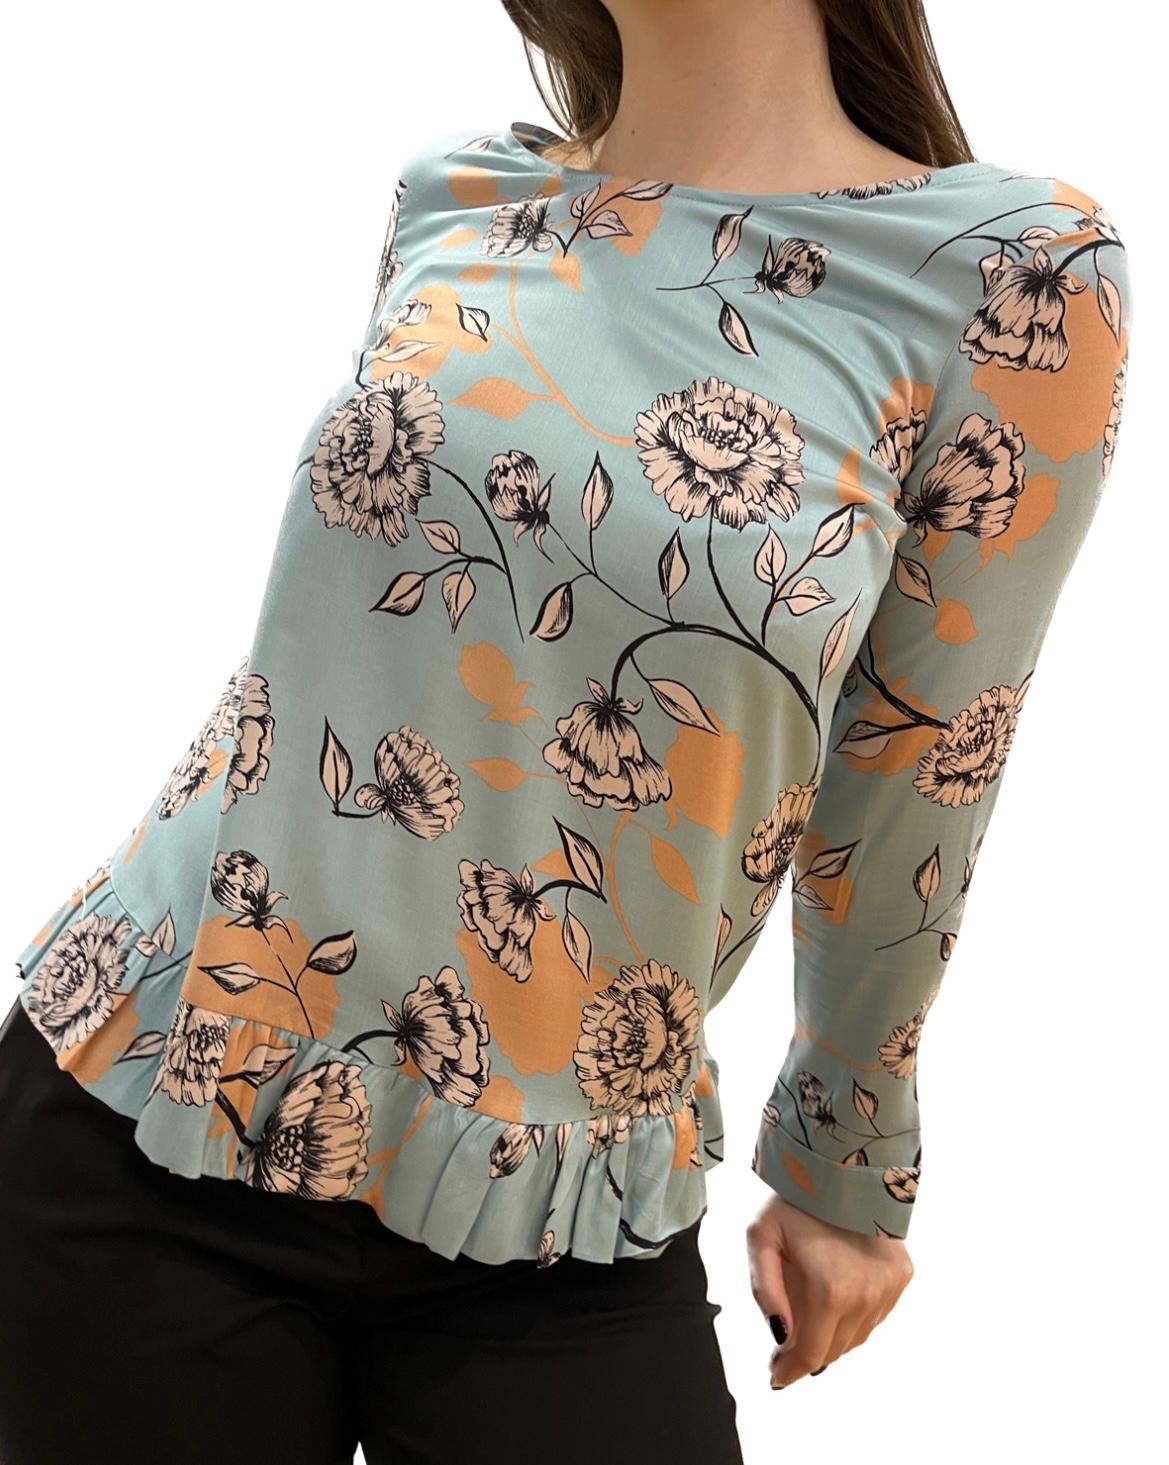 CARACTĒRE Ženska bluza sa cvetnim dezenom svetloplava